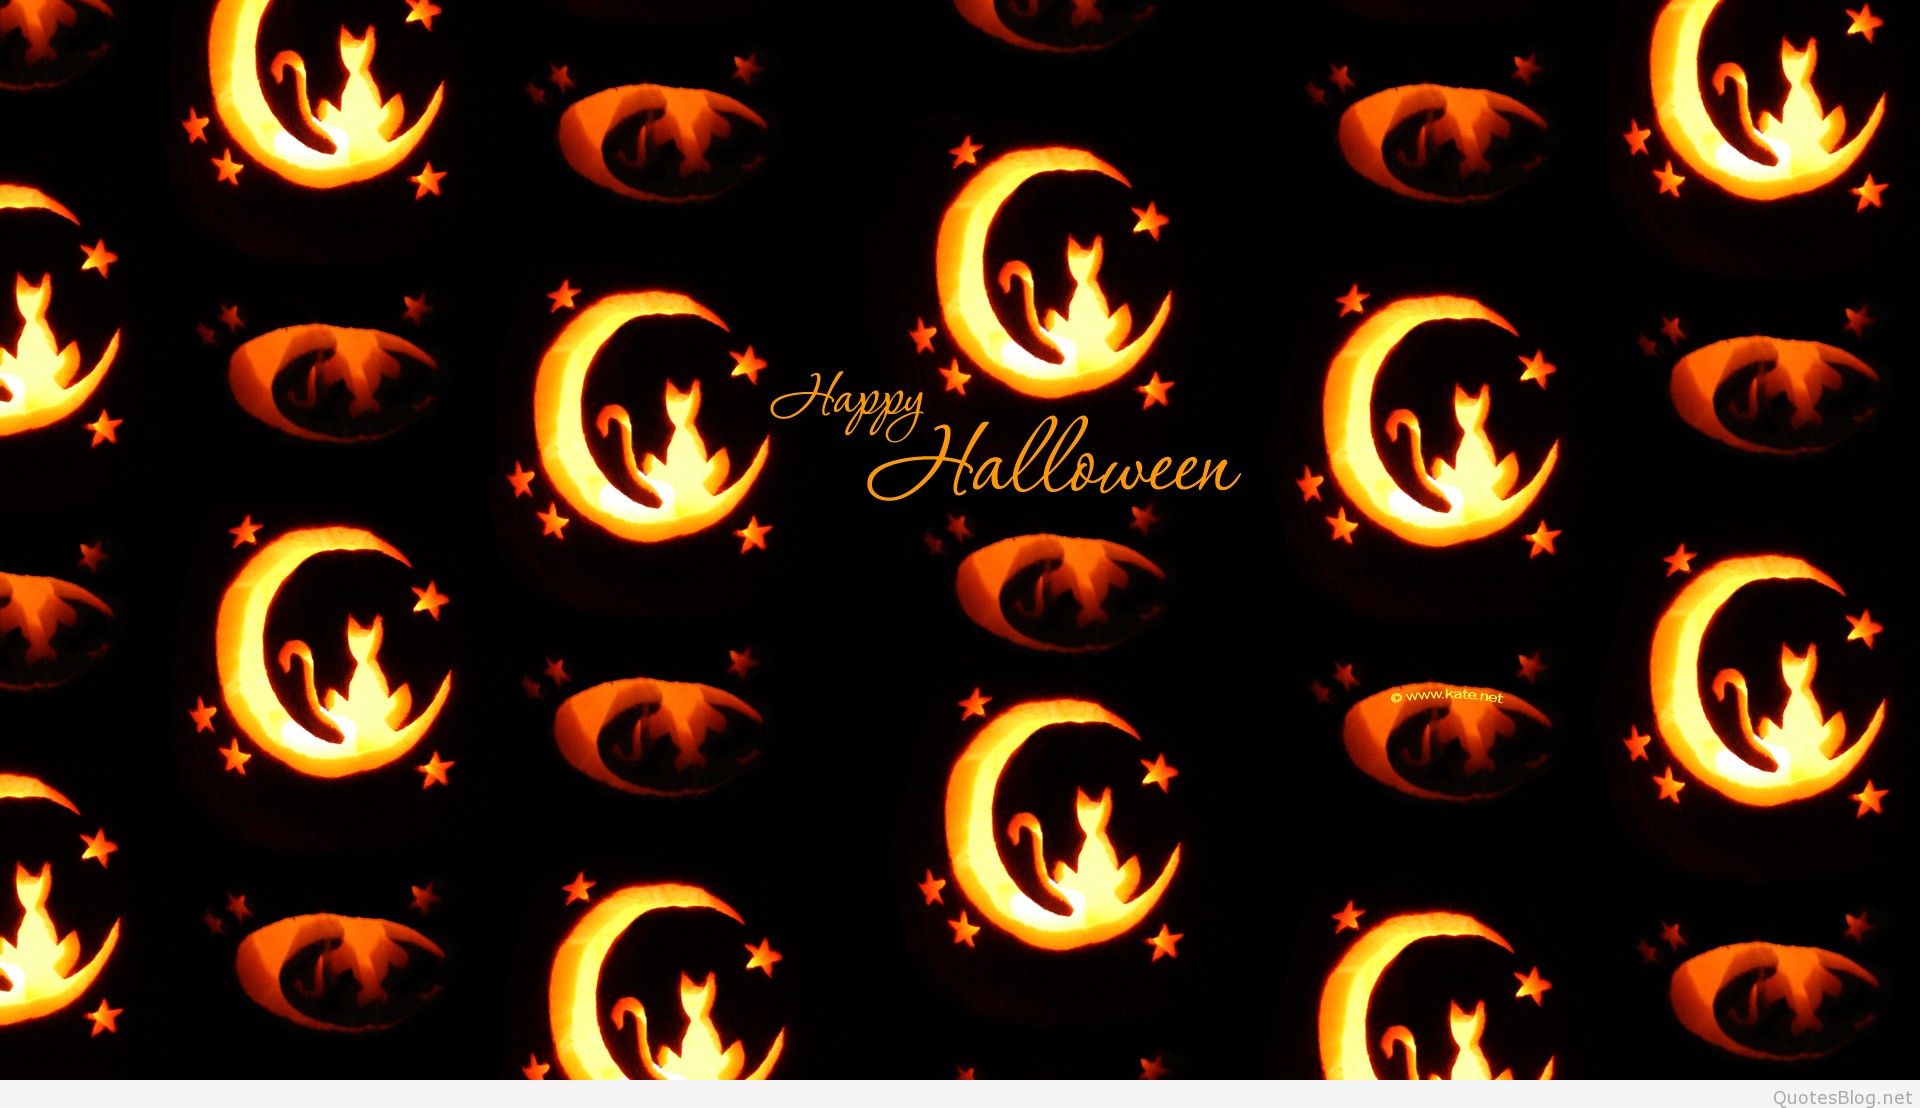 Happy Halloween Wallpaper 1080p Screensaver